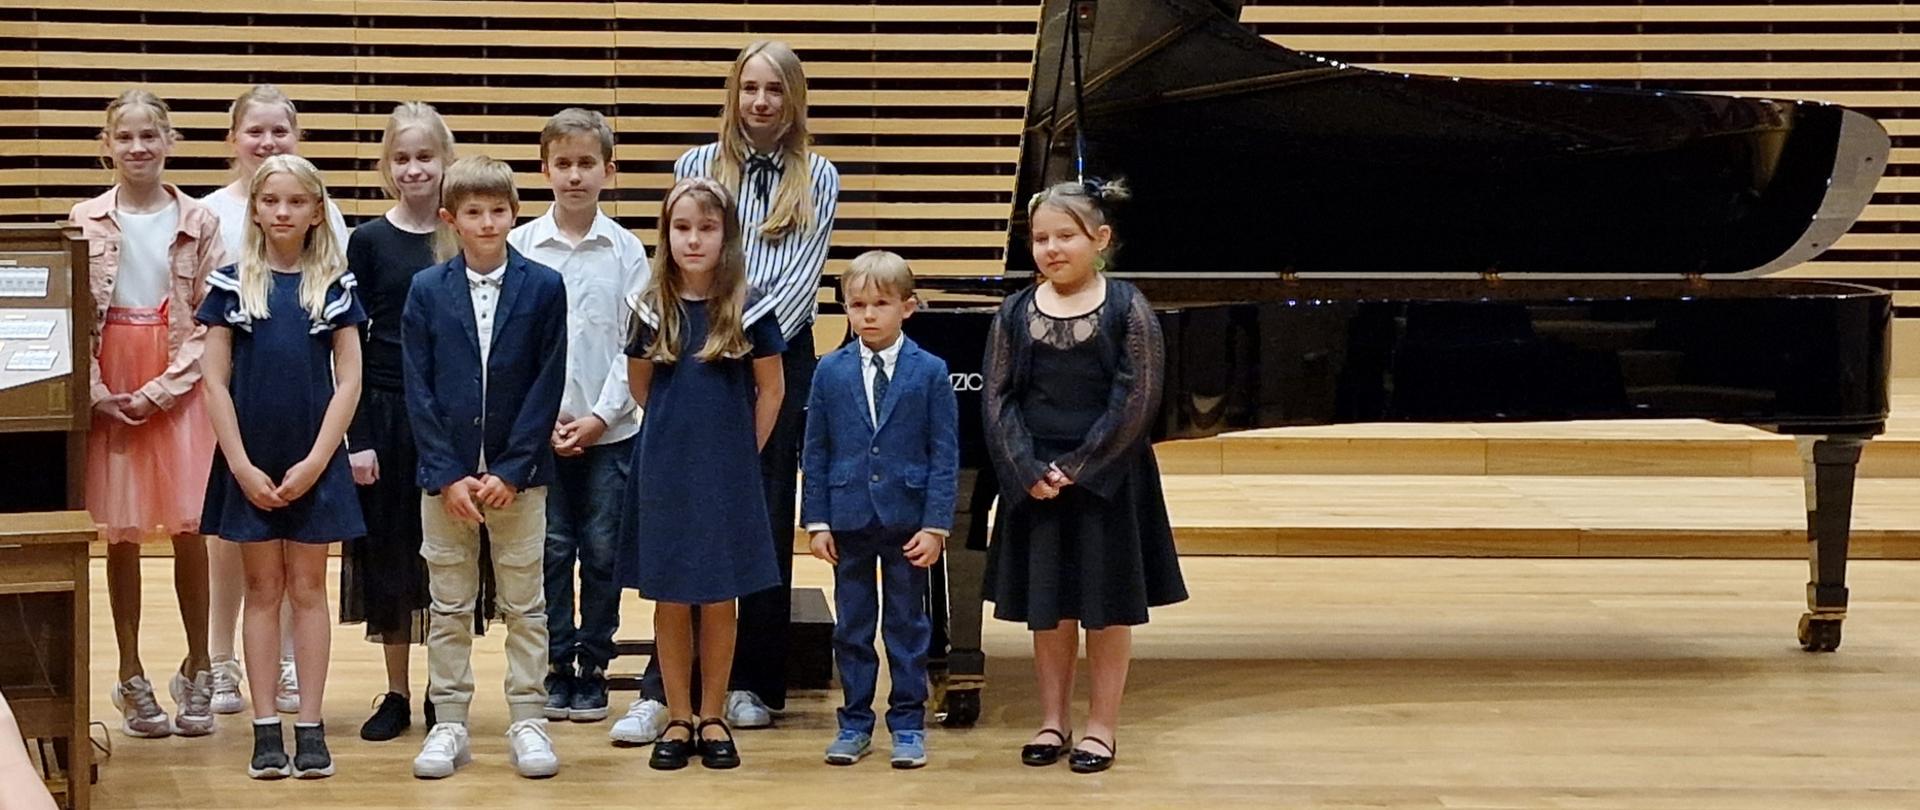  Dziesięcioro dzieci elegancko ubranych stoi przy fortepianie na estradzie sali koncertowej.